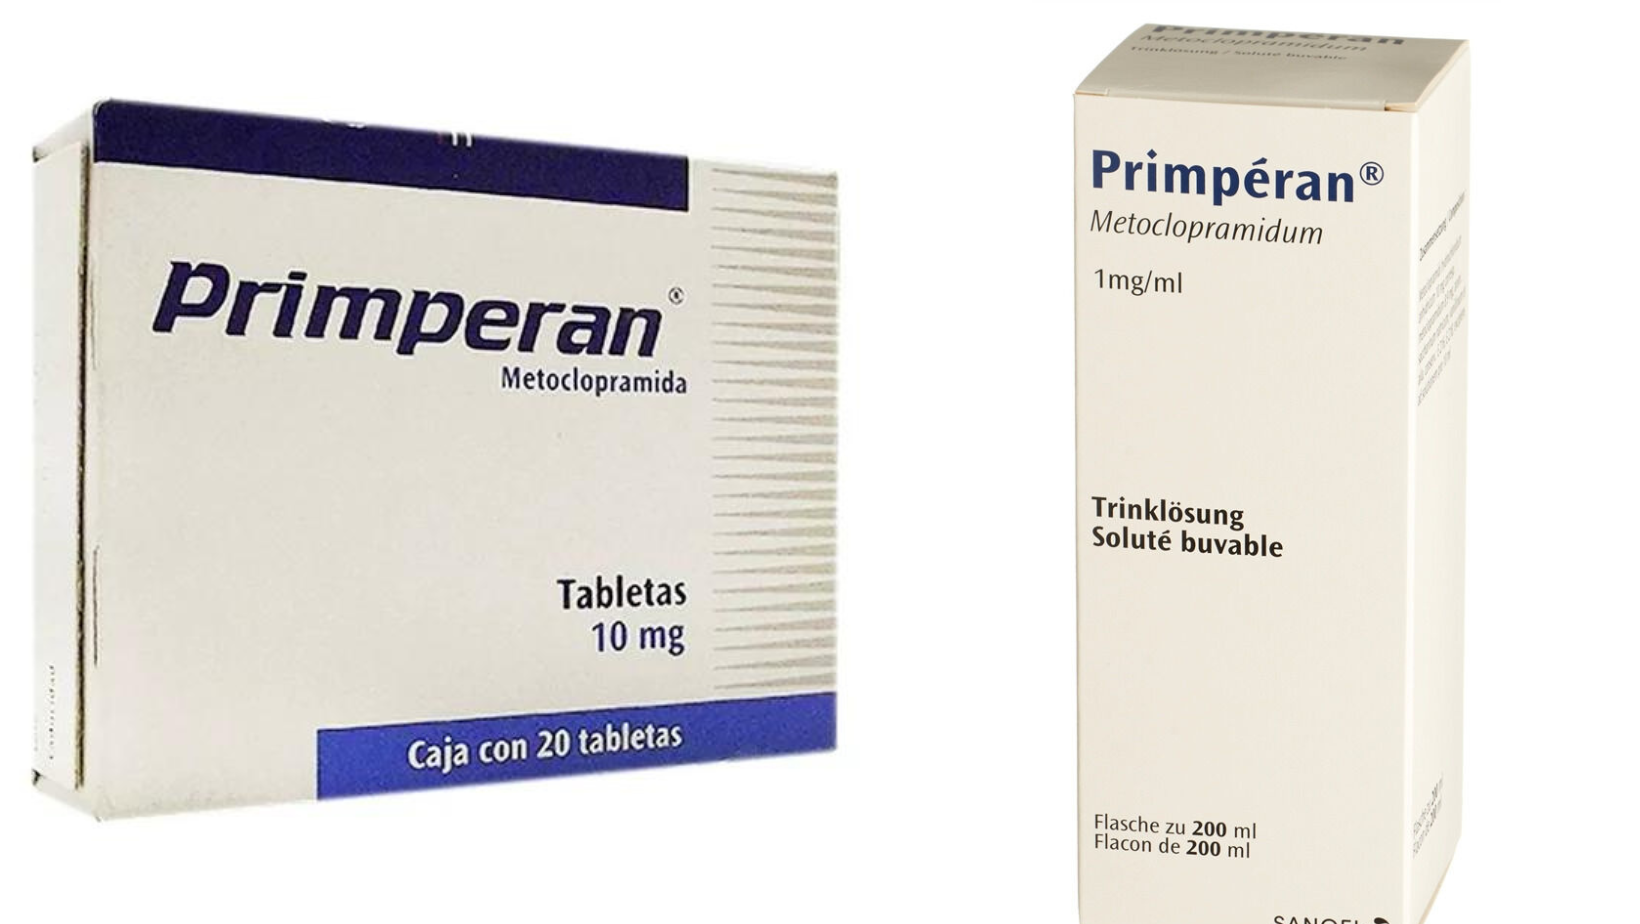 Primperan 10 mg : Guide complet sur l'utilisation, les effets secondaires et les contre-indications